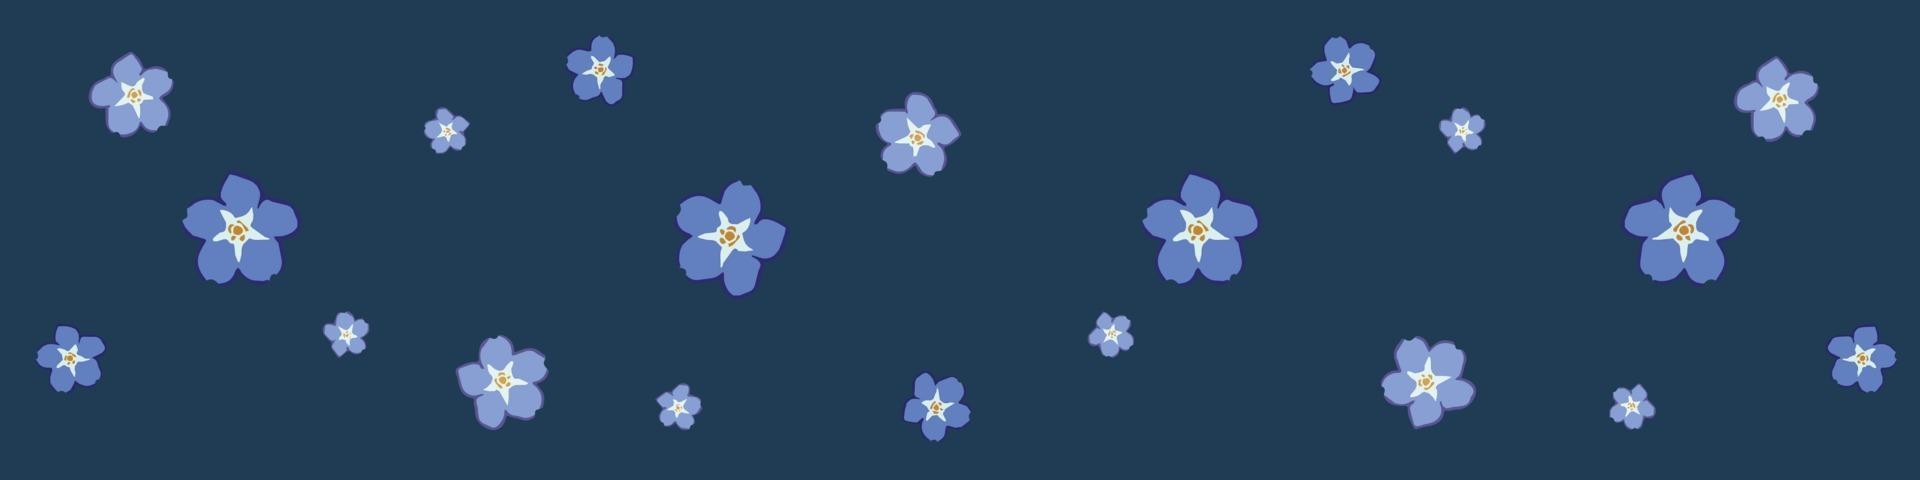 bloemen op blauwe achtergrond vector